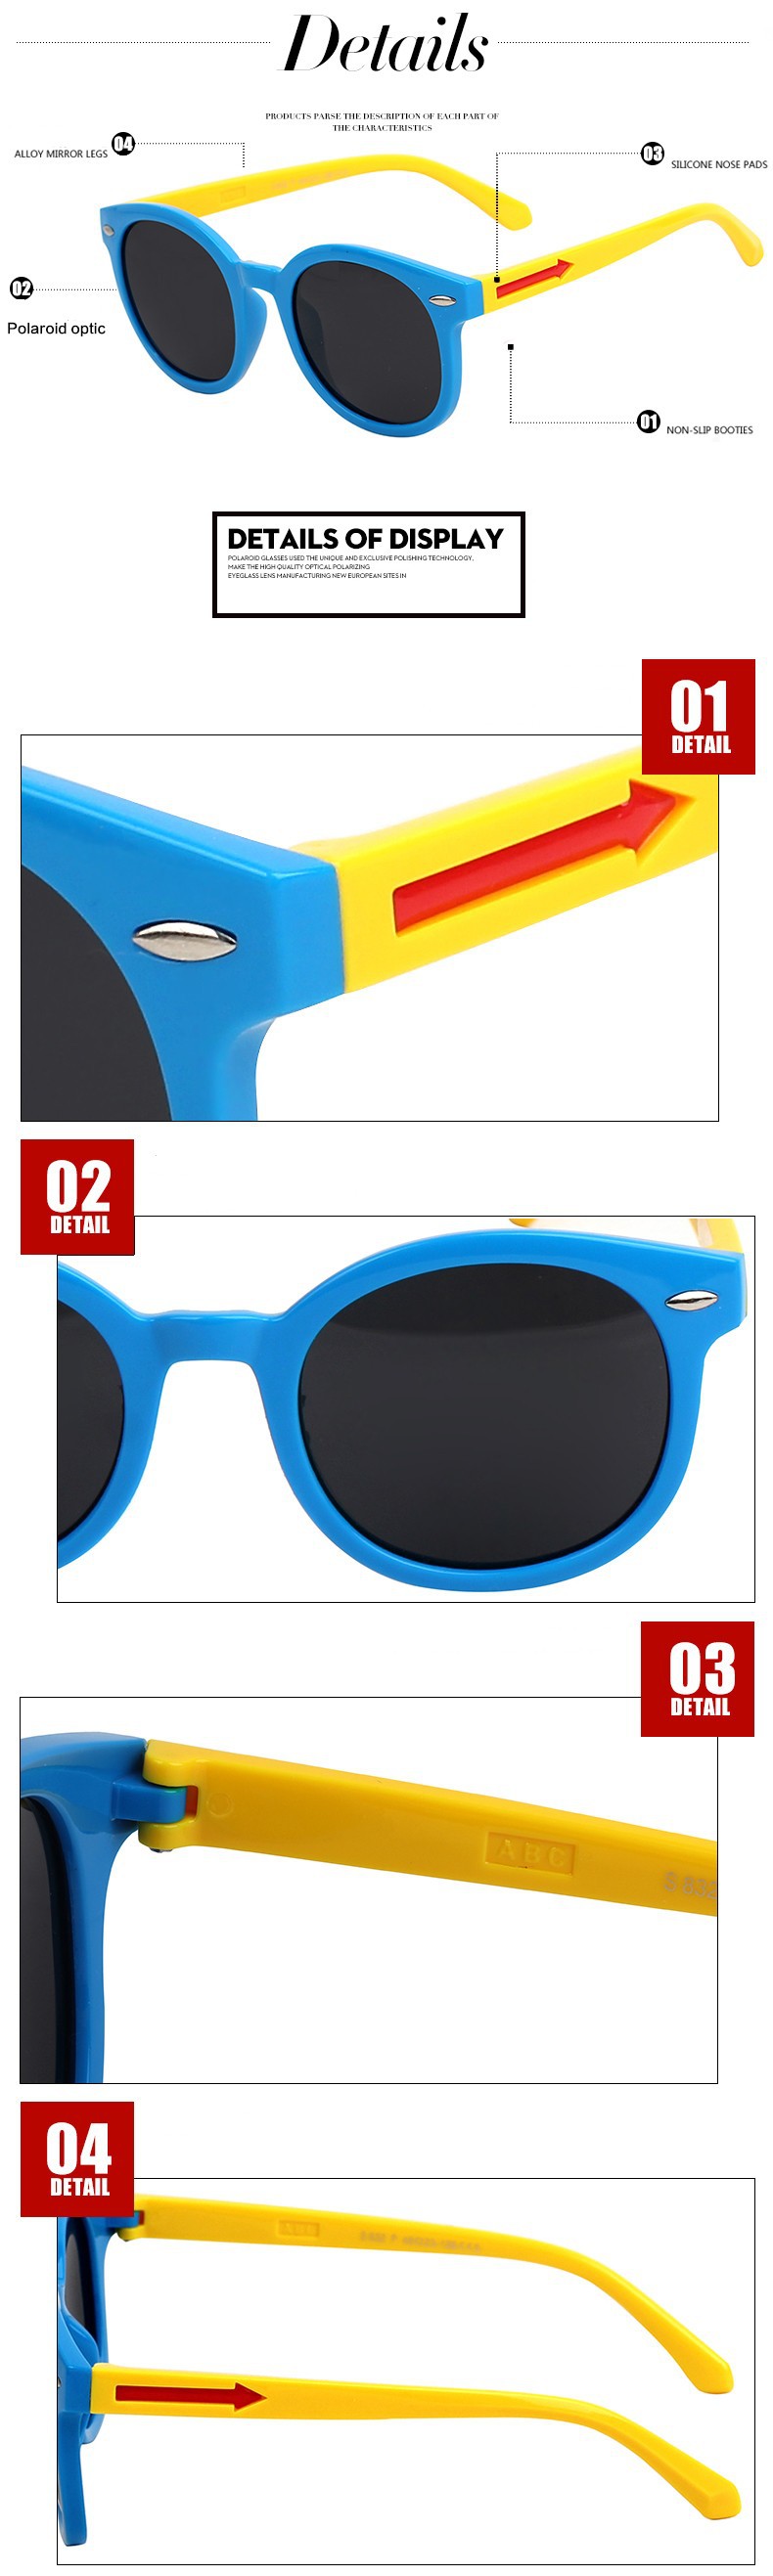 New arrival 2015 Child polarized Boy girls Sunglasses Super-soft materials anti-uv glasses 4